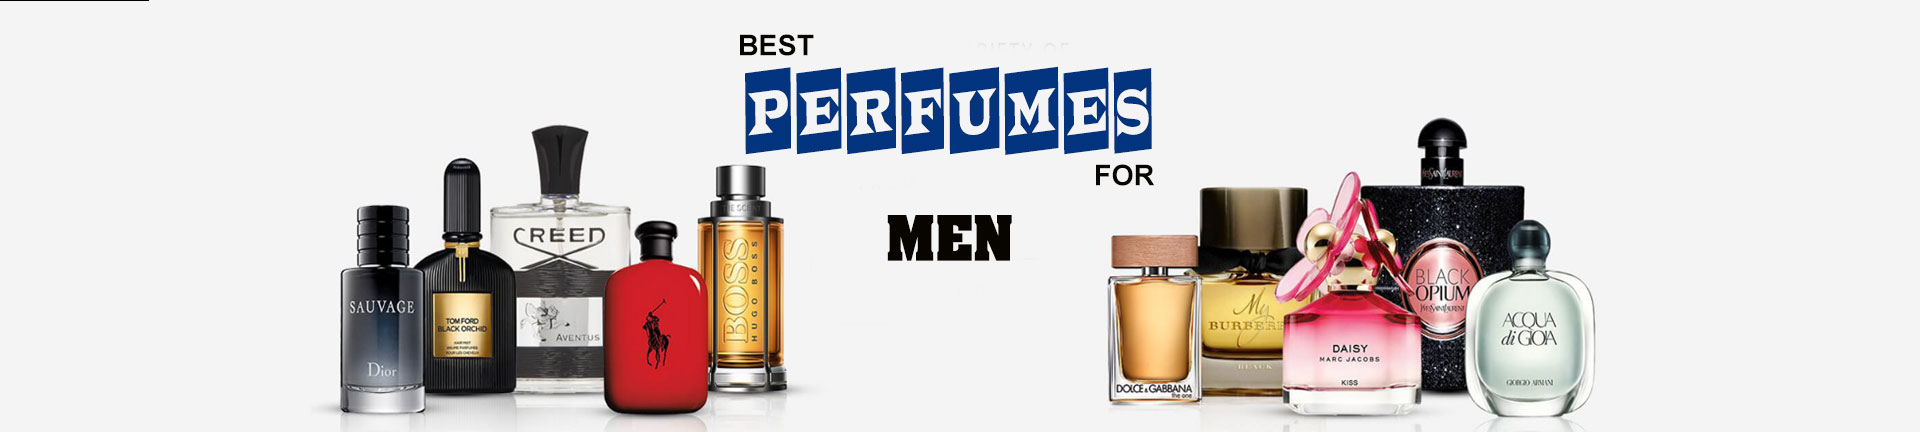 Best Men's Perfume Price Online in Pakistan - Kayazar